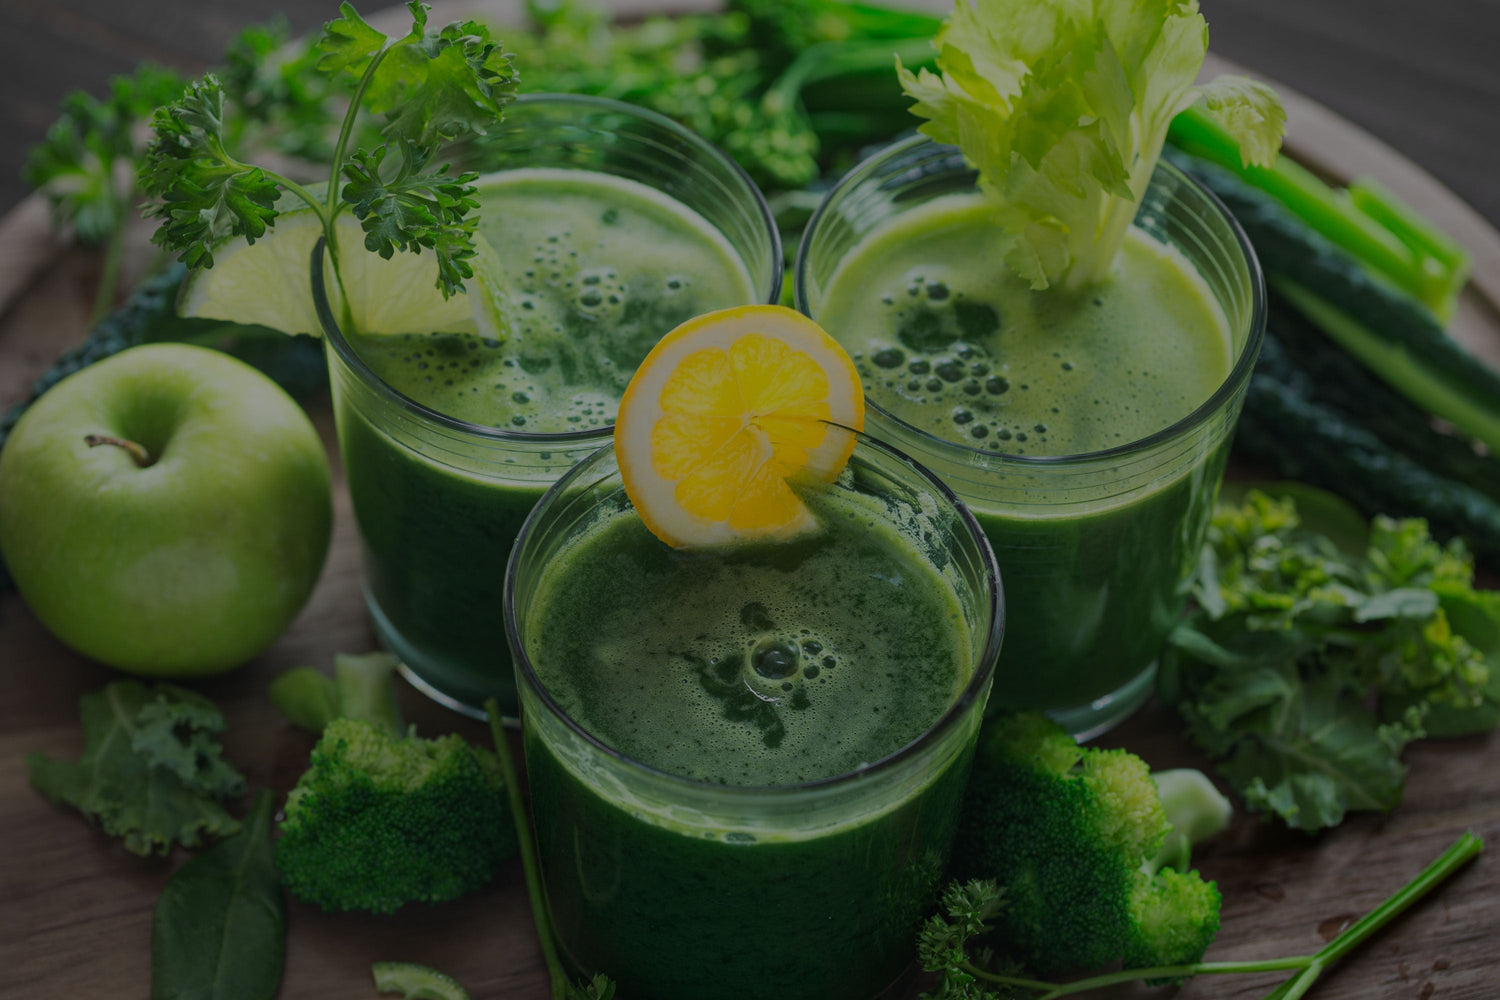 Blending Greens & Antioxidants: Health Wins